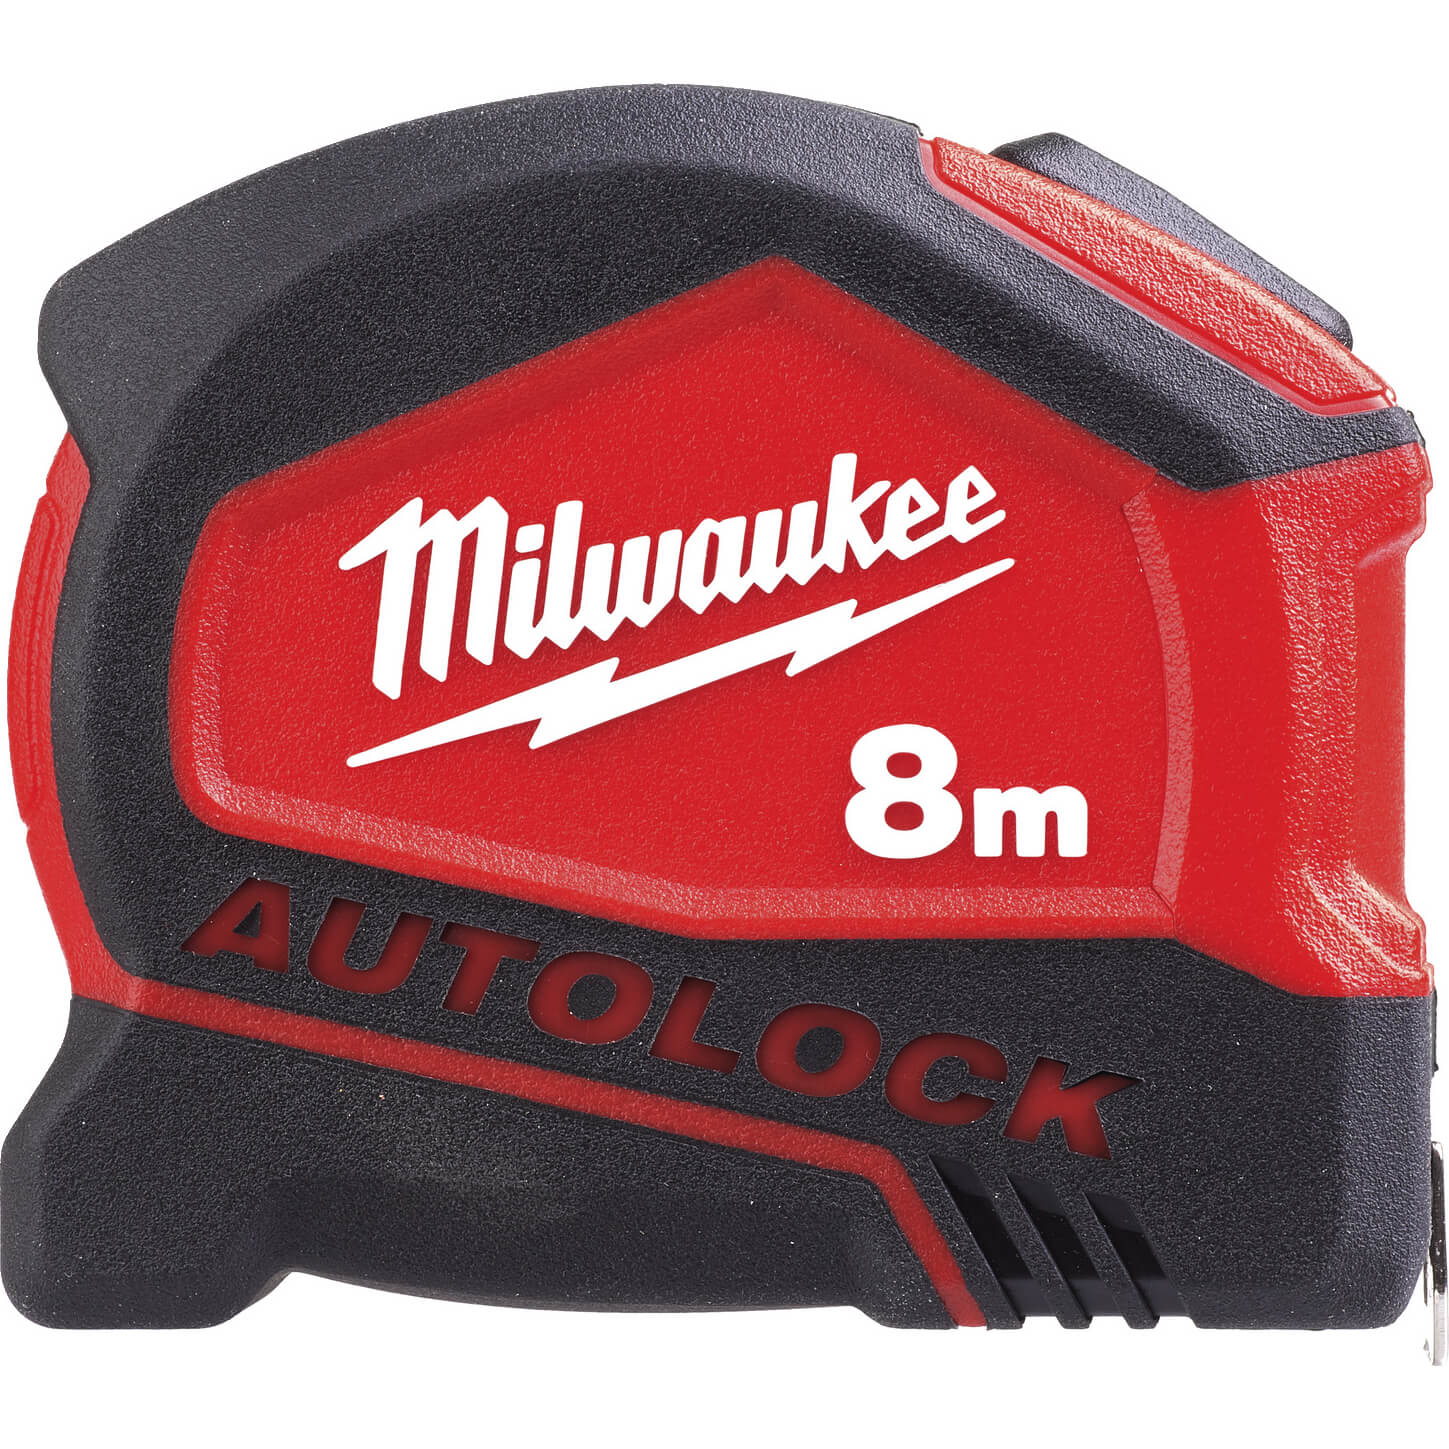 Photos - Tape Measure and Surveyor Tape Milwaukee Autolock Tape Measure Metric Metric 8m 25mm 4932464664 